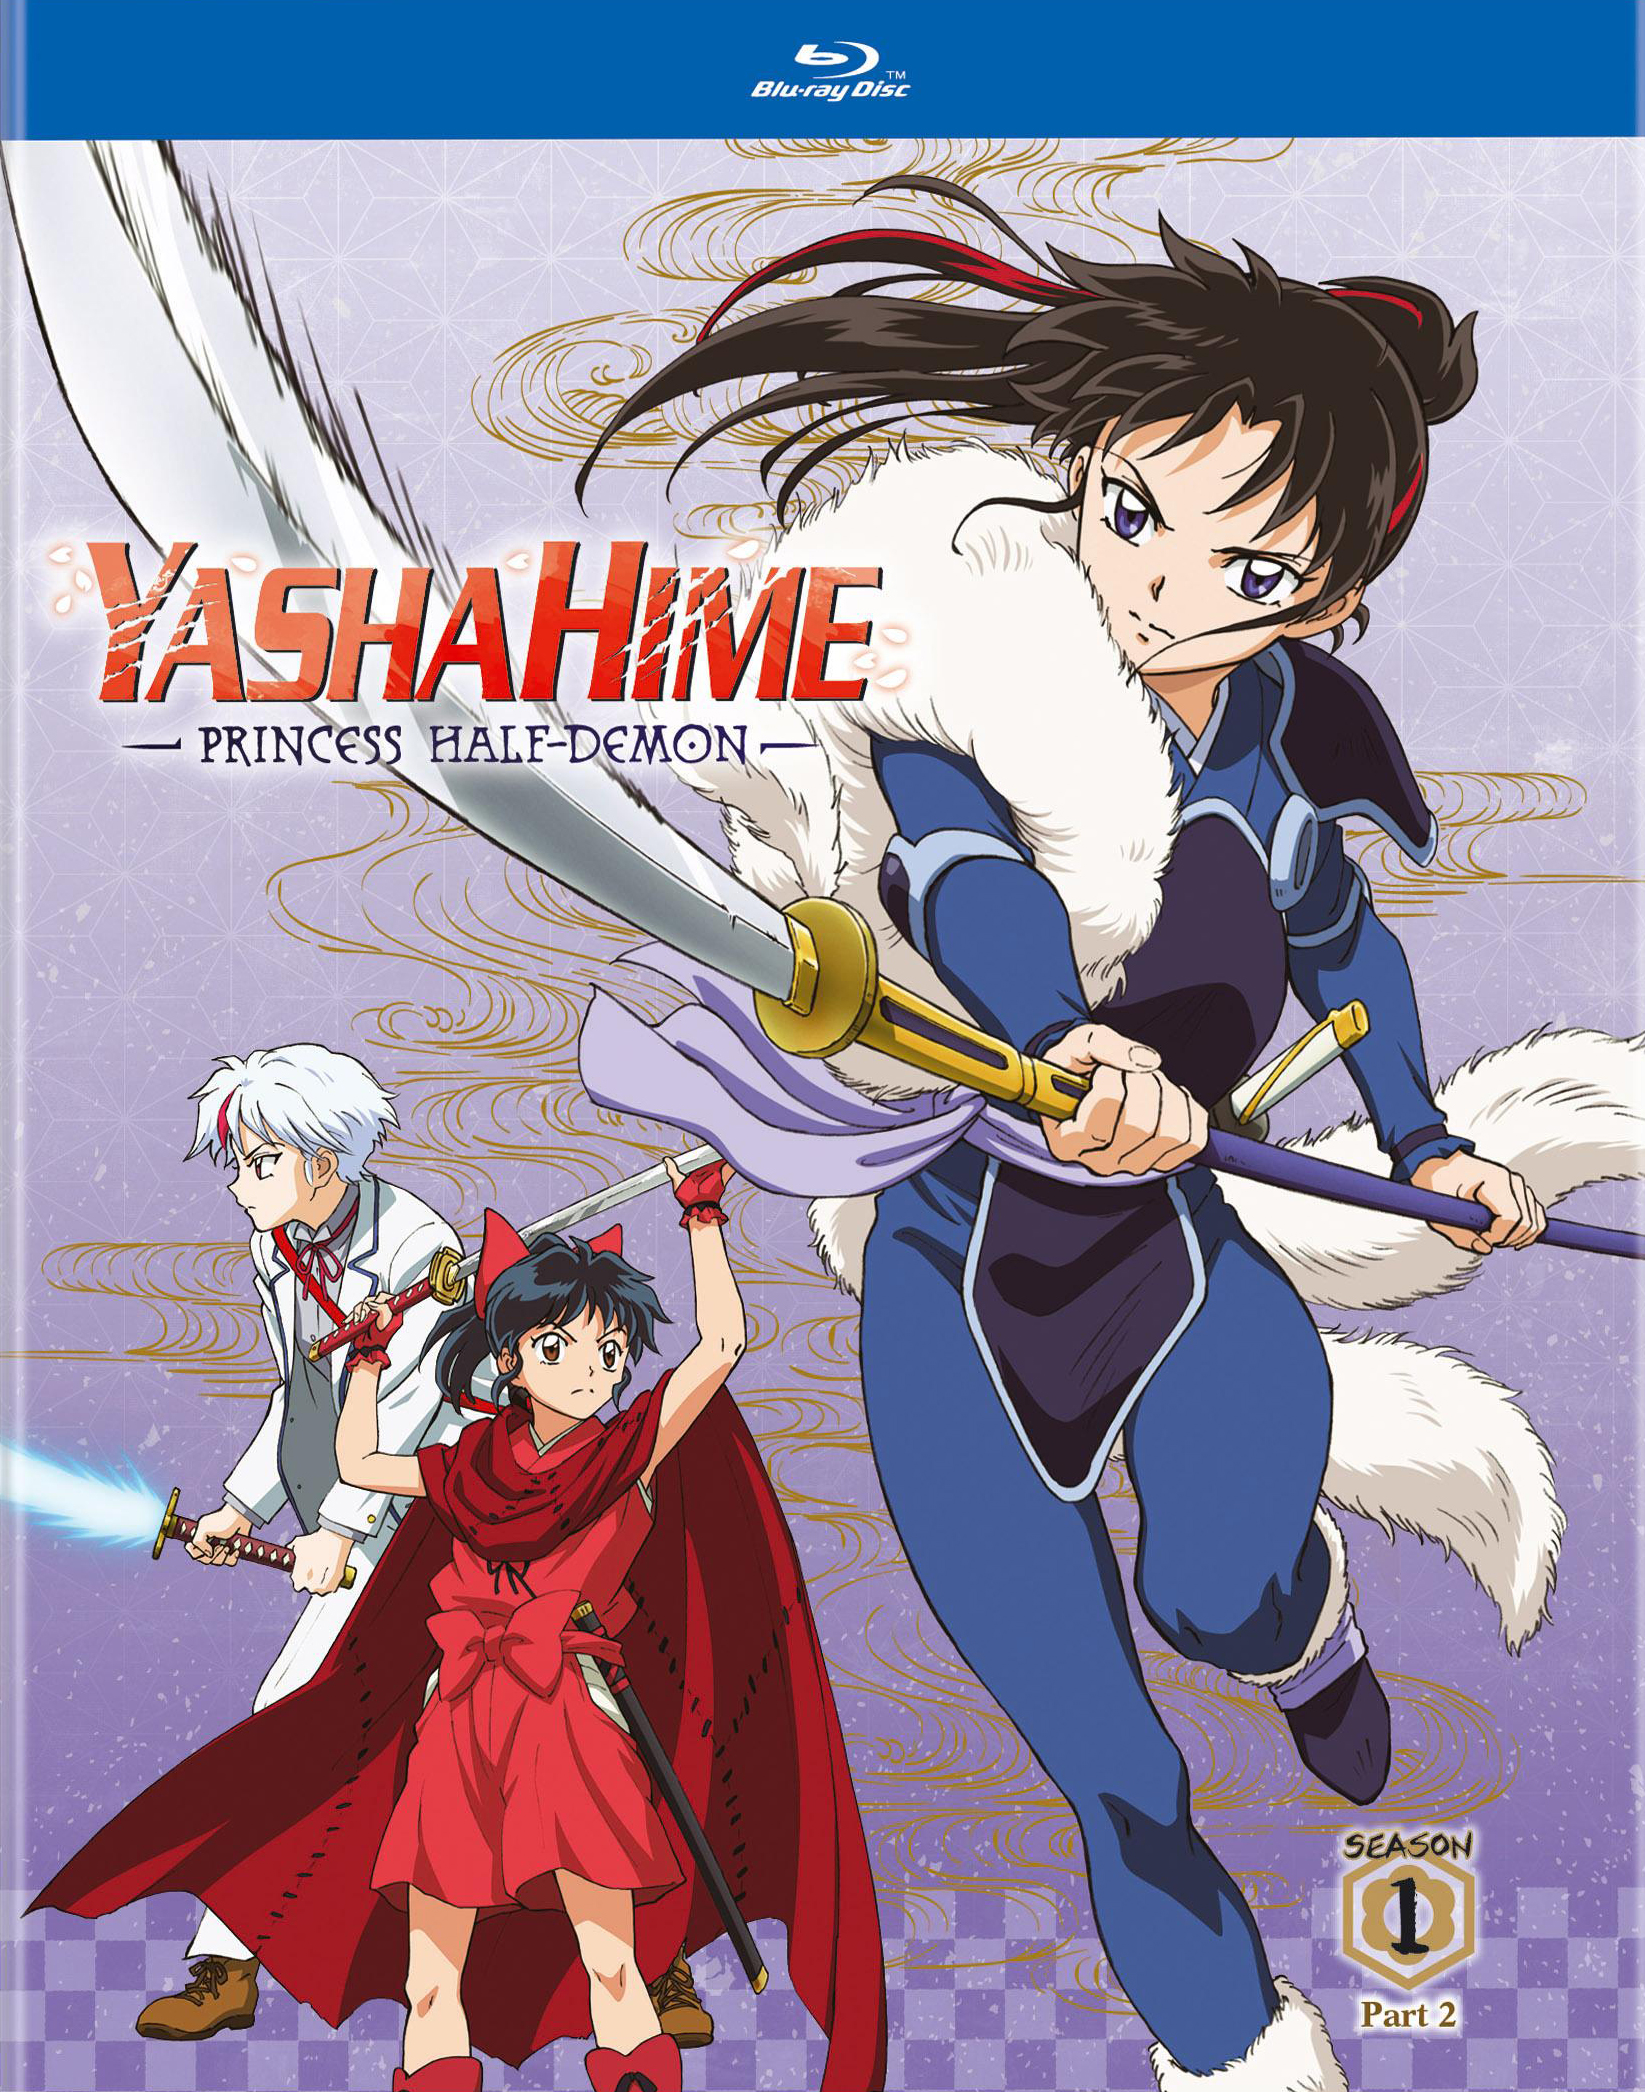 Anime Review - Yashahime: Princess Half-Demon